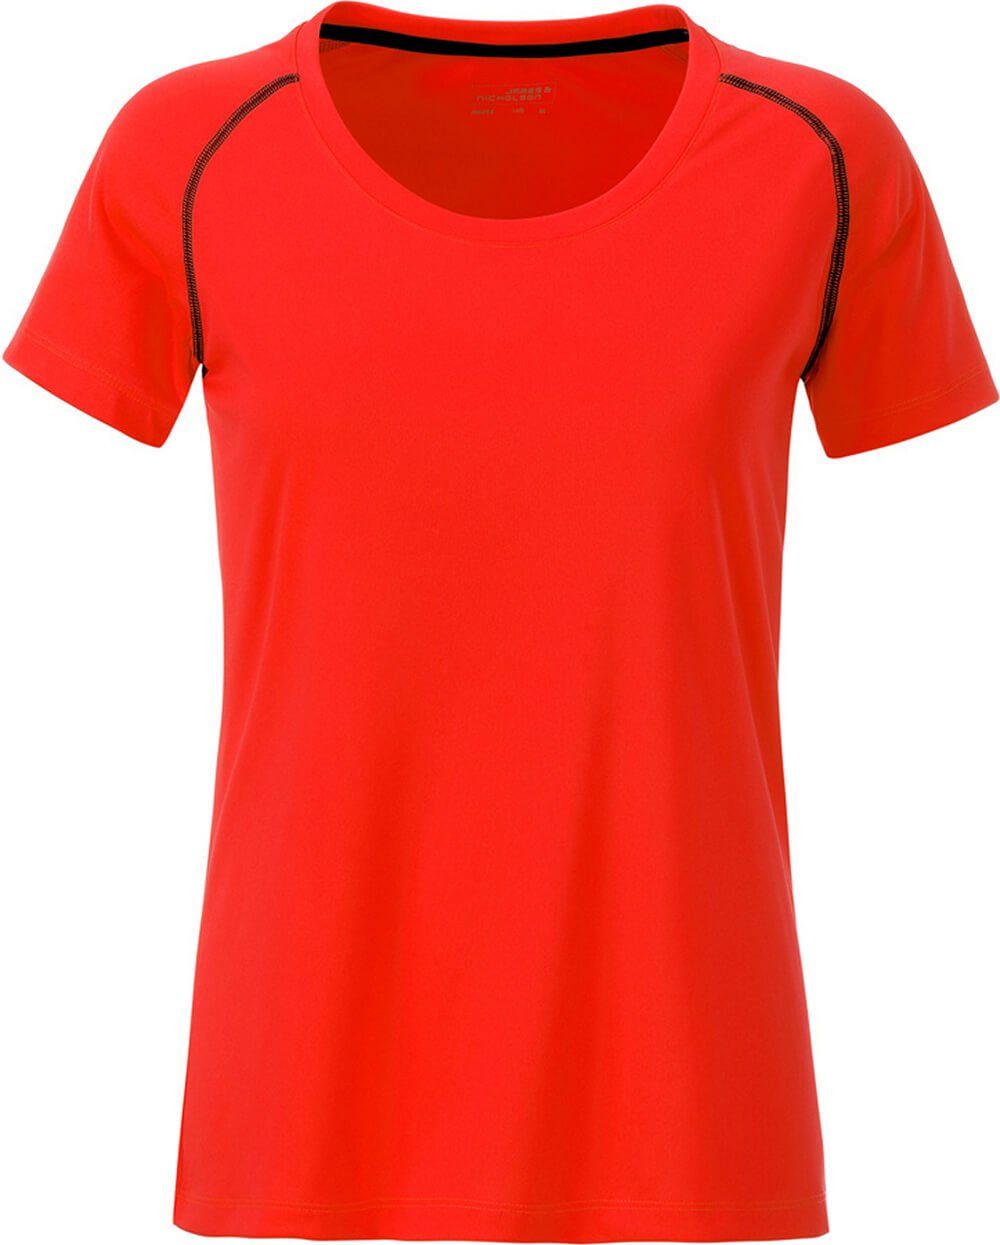 James & Nicholson Funktionsshirt James & Nicholson JN 495 Damen Funktions-Shirt schnell trocknend bright orange/black